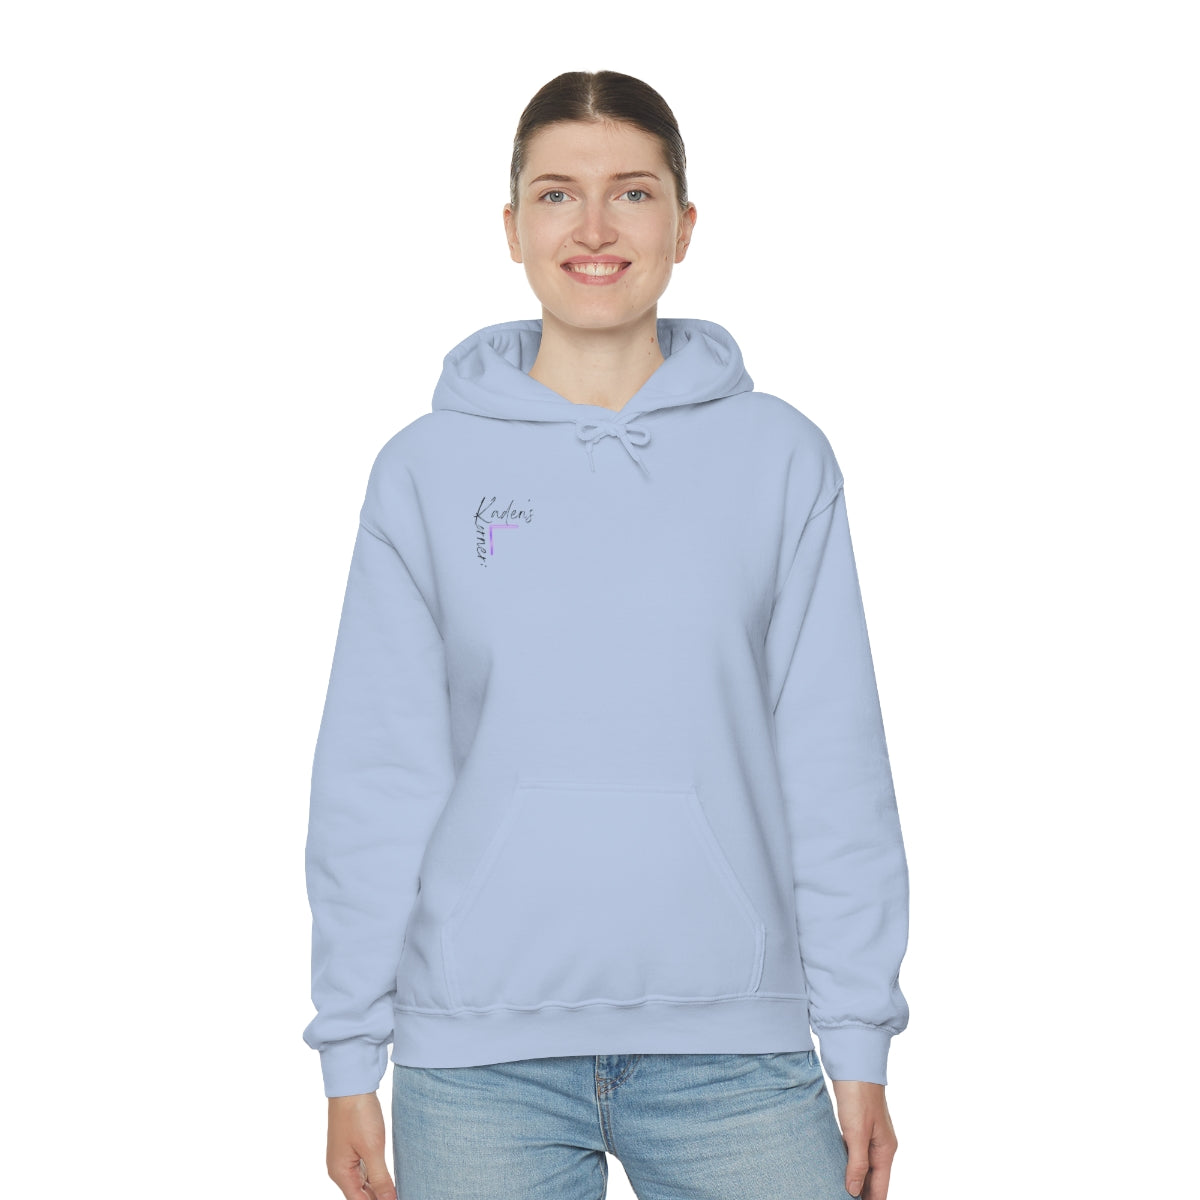 Tomorrow needs you*Unisex Heavy Blend™ Hooded Sweatshirt